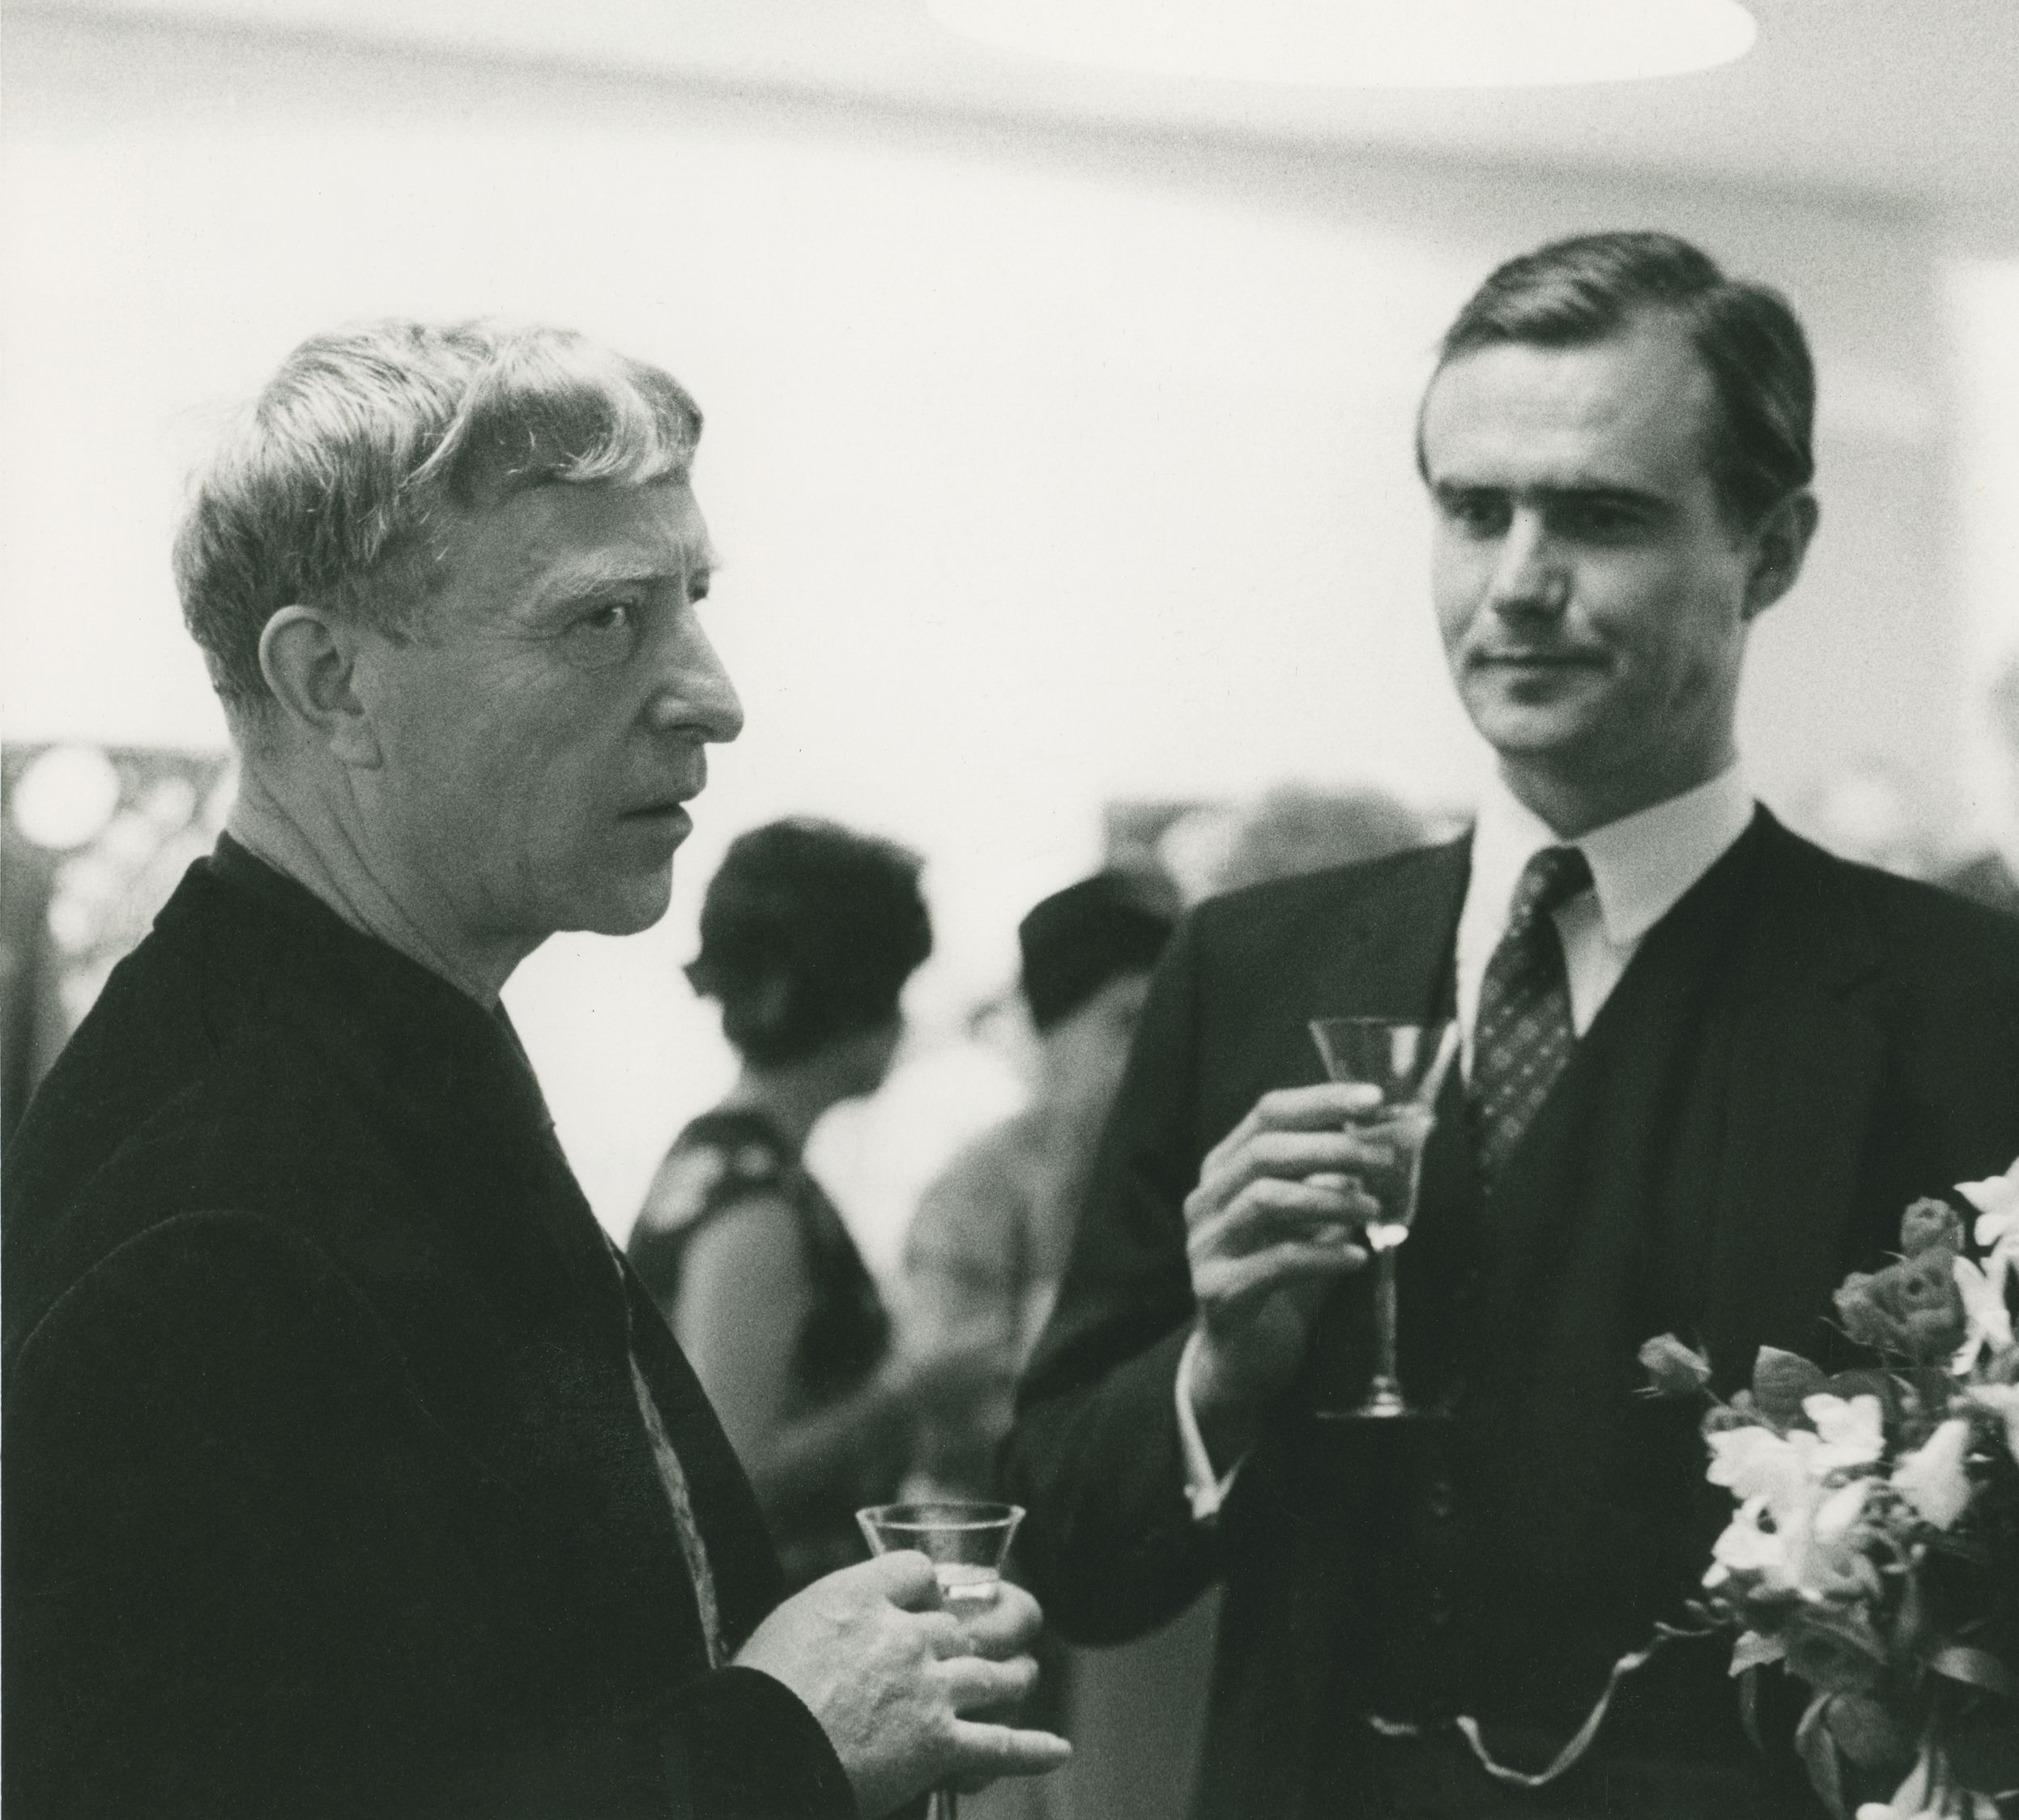 Kunstner møder aspirerende kunstner… Carl-Henning Pedersen og Prins Henrik ved åbningen af Carl-Henning Pedersens udstilling i Helsinki 1968, året før prinsen selv debuterer som skulpturkunstner.